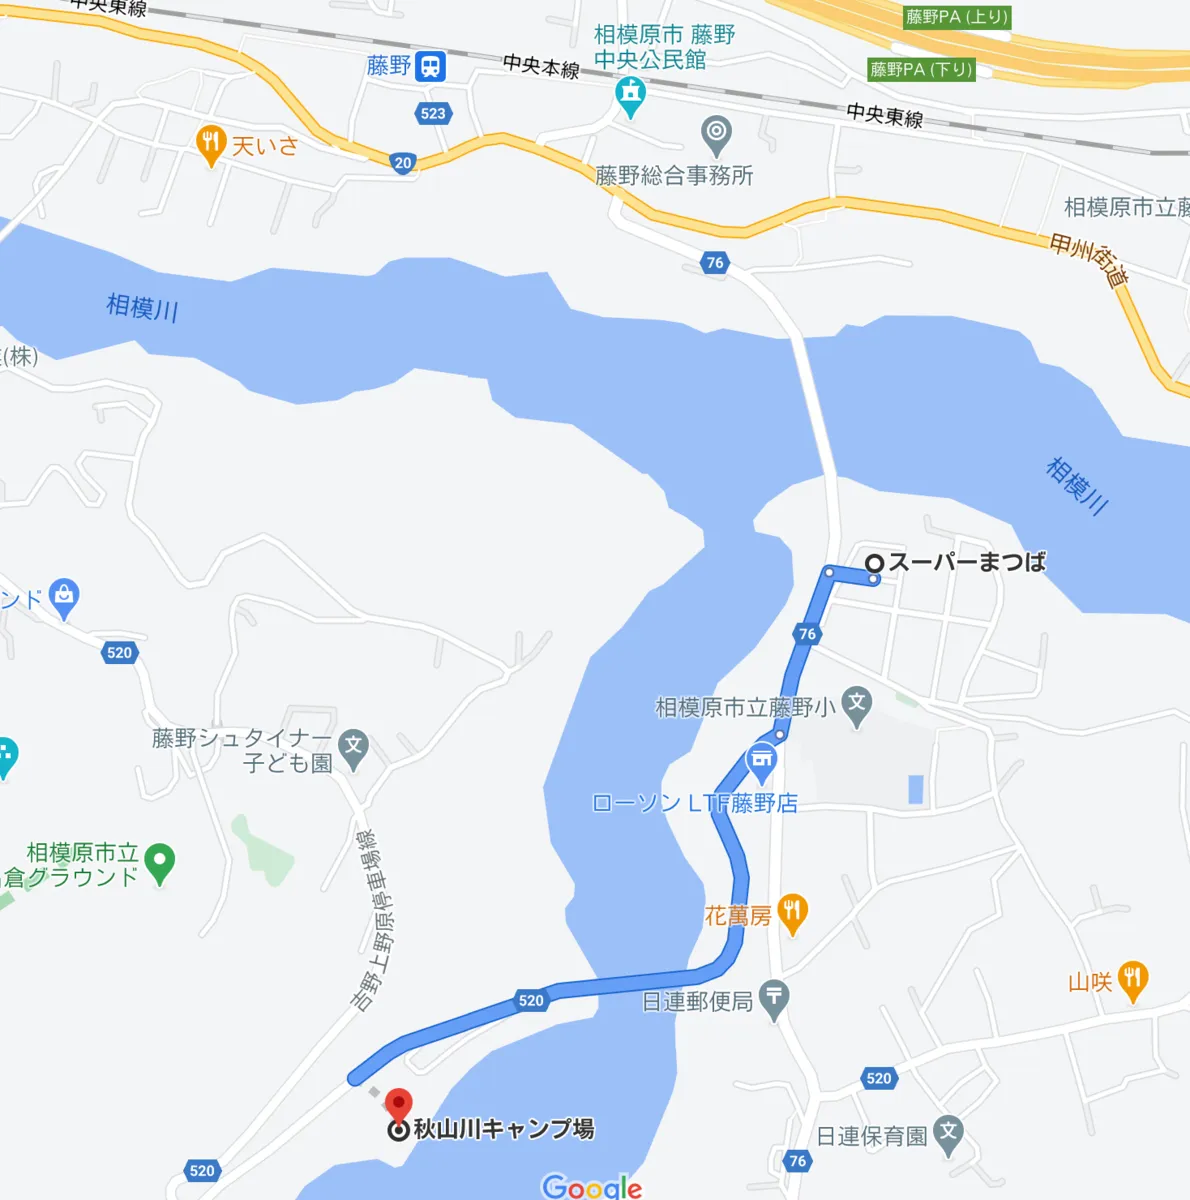 마츠바에서 아키야마가와 캠프장까지의 지도와 경로